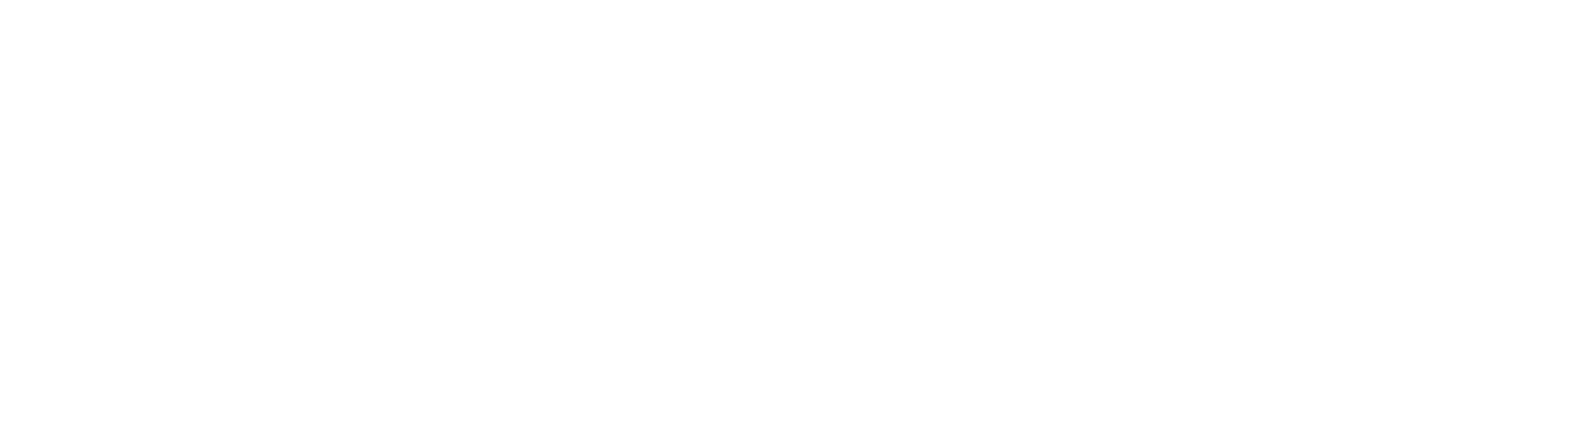 Bendigo and Adelaide Bank logo large for dark backgrounds (transparent PNG)